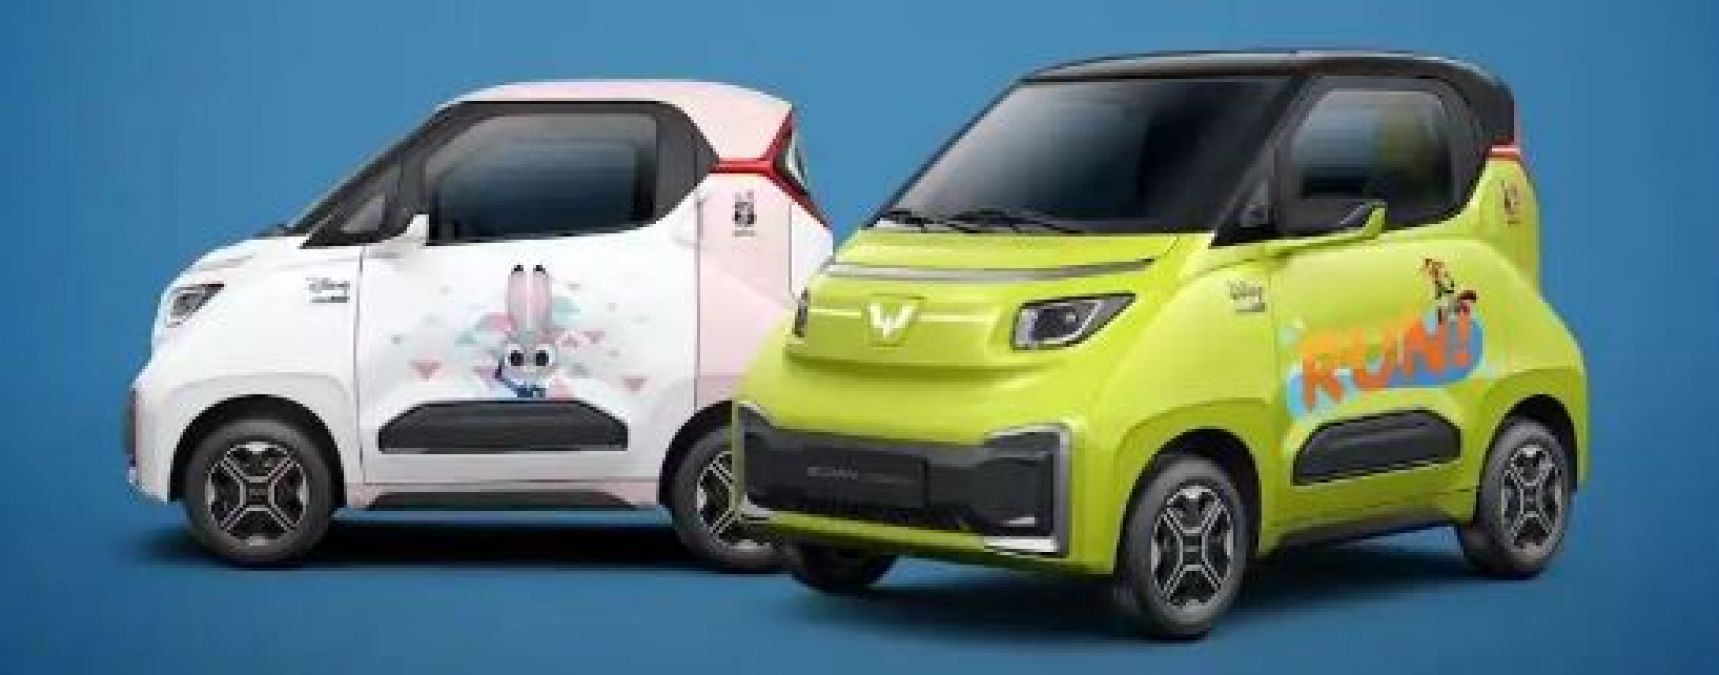 Alto से भी सस्ती इलेक्ट्रिक कार है Nano EV